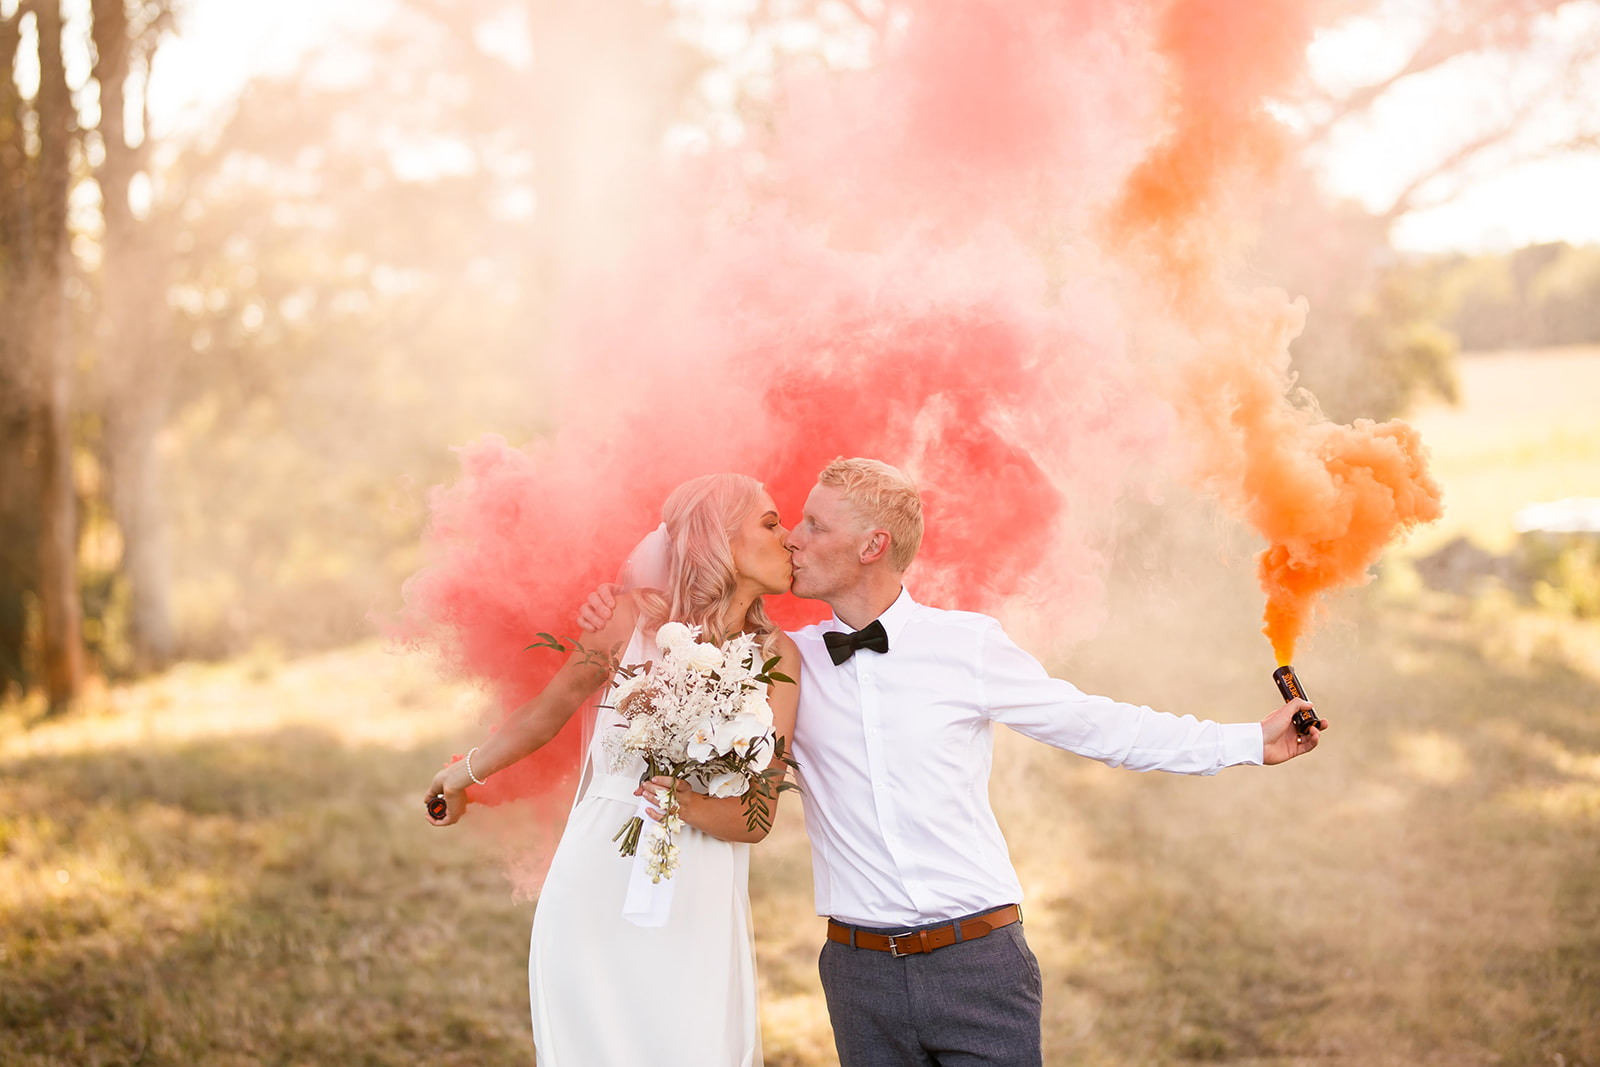 Wedding Photo with Smoke Bombs